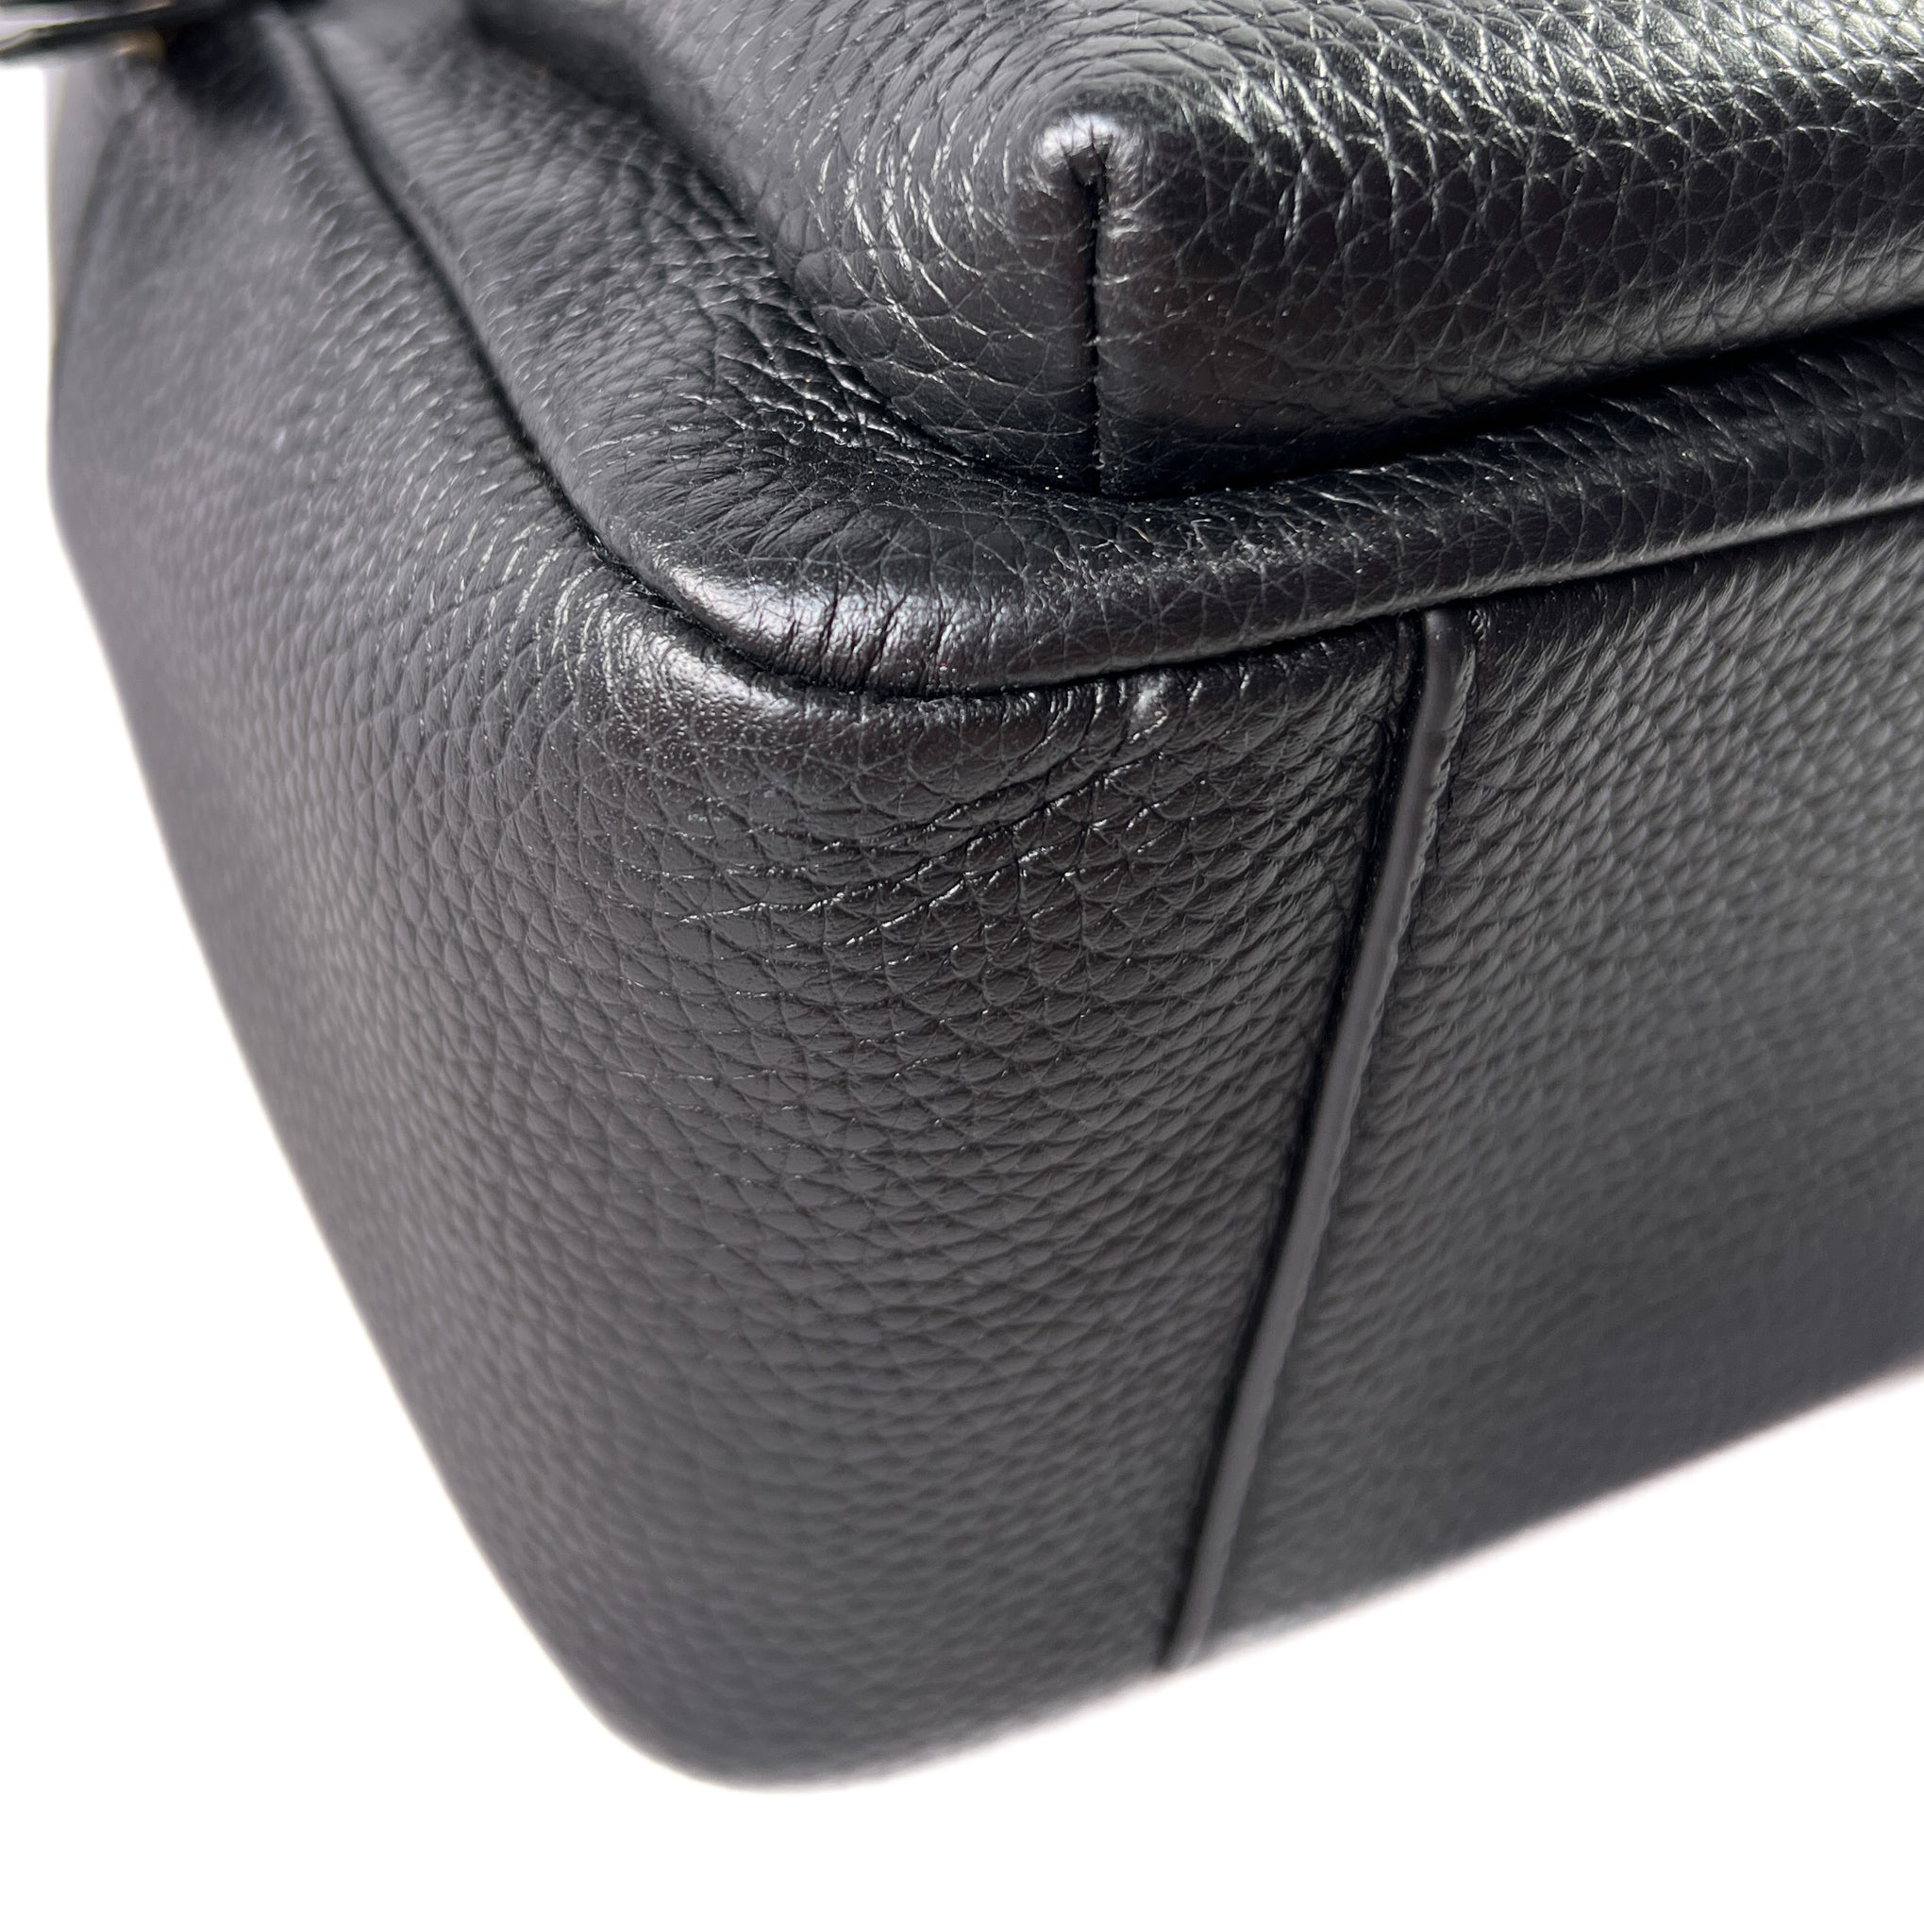 พร้อมส่ง 7,990 บาท Tory Burch THEA Mini Bucket Pebble Leather Backpack